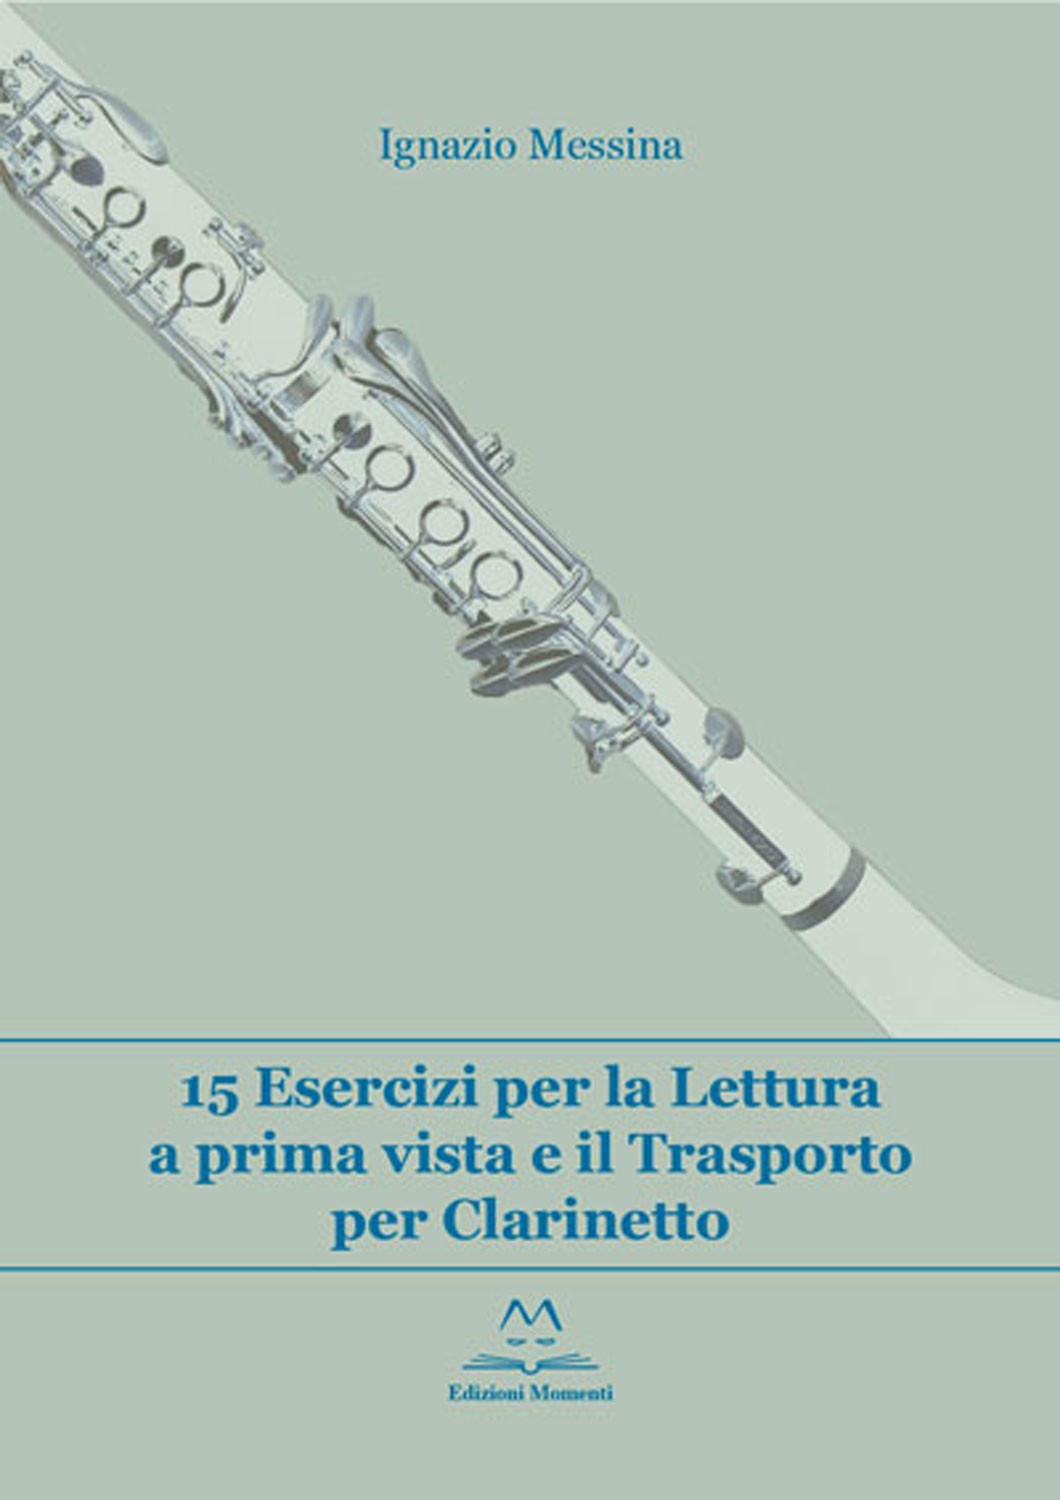 15 esercizi per la lettura a prima vista e il trasporto per Clarinetto di Ignazio Messina